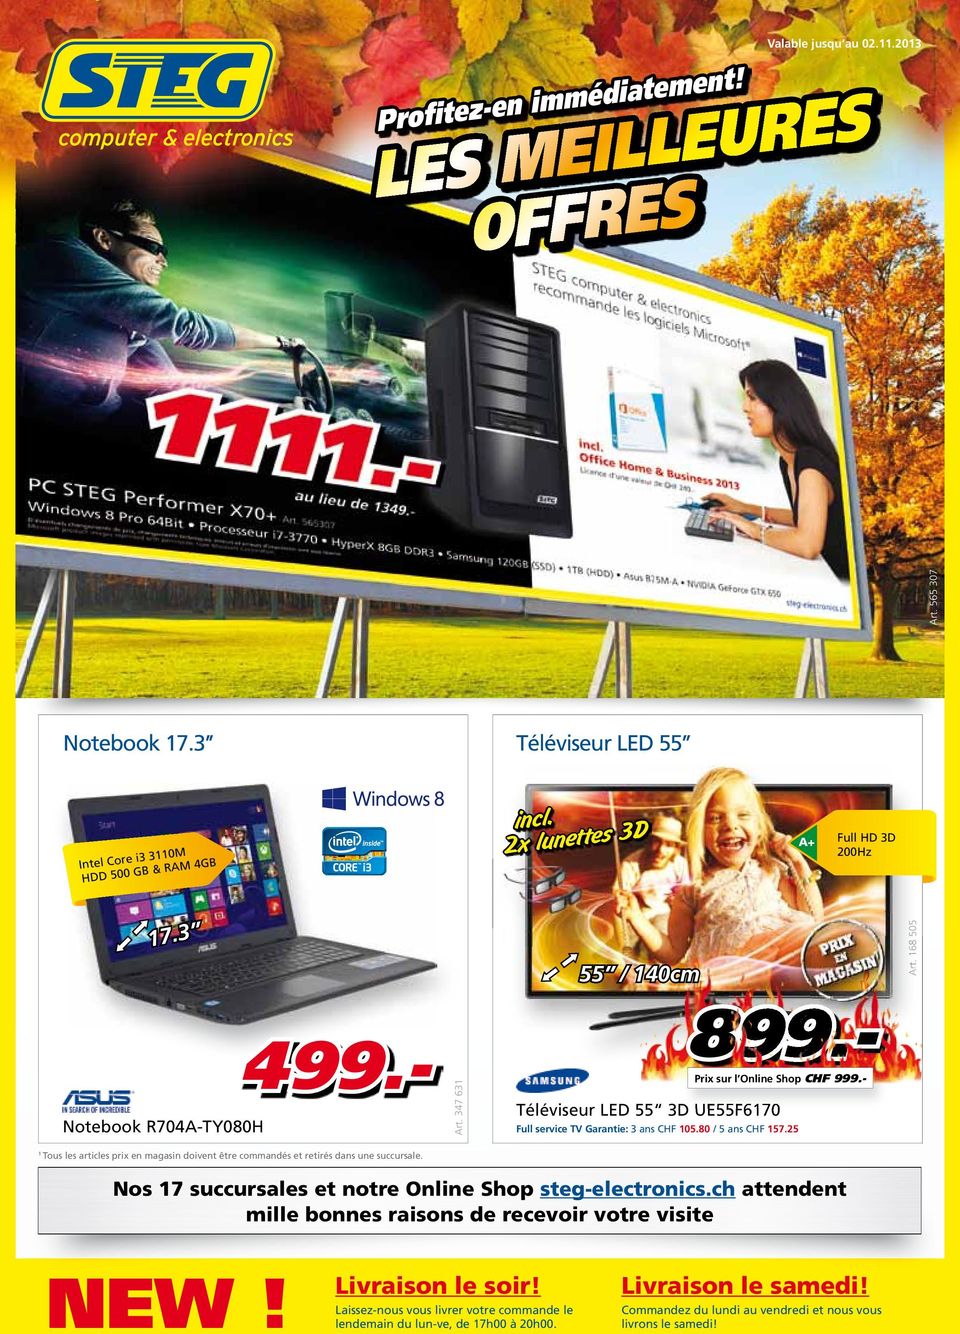 - Prix sur l Online Shop CHF 999.- Téléviseur LED 55 3D UE55F670 Full service TV Garantie: 3 ans CHF 05.80 / 5 ans CHF 57.